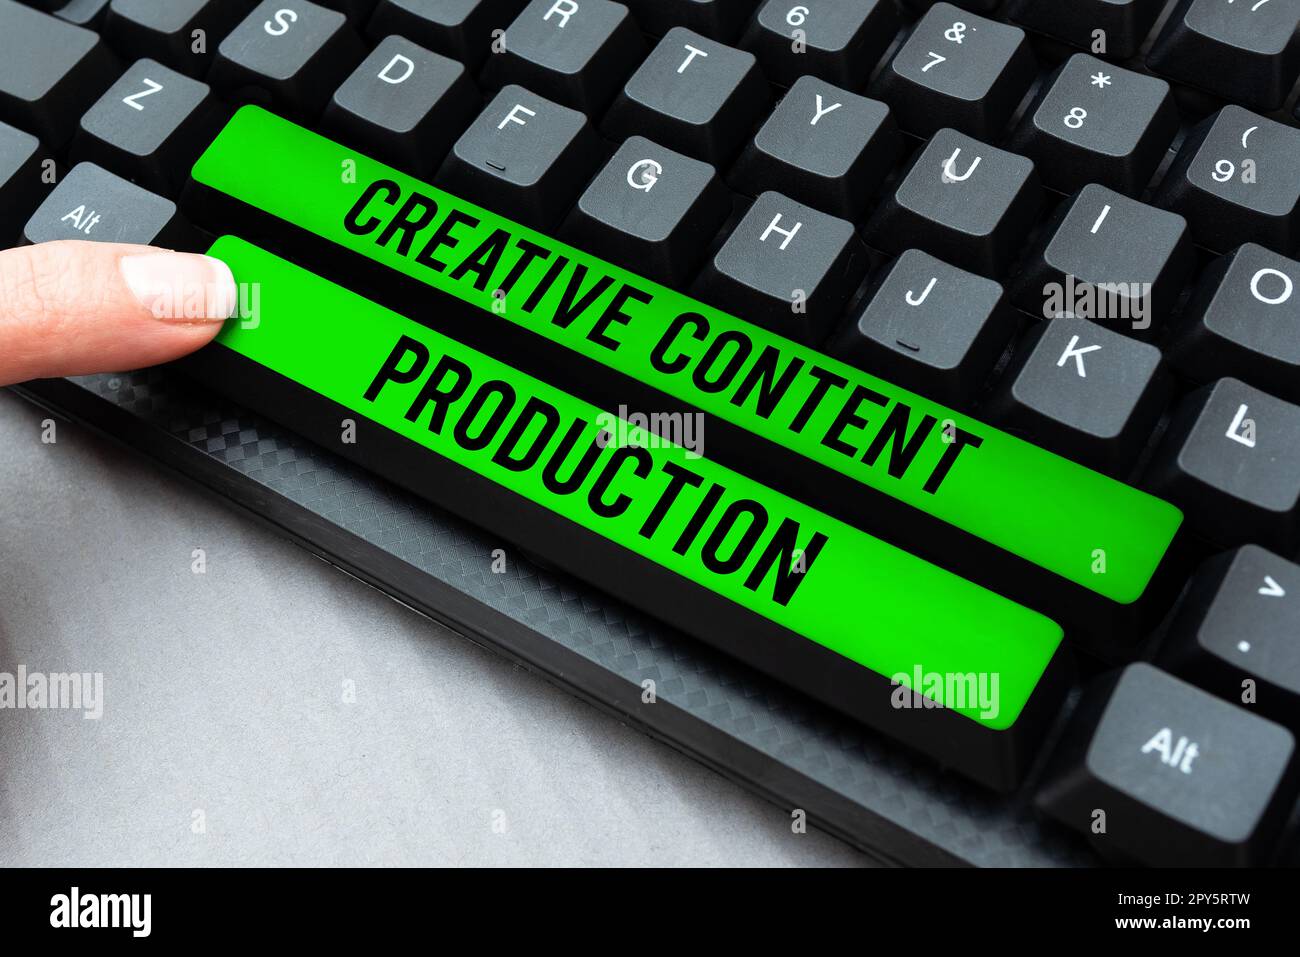 Konzeptionelle Darstellung Creative Content Production. Ein Wort, das darauf abzielt, Menschen die Art von Inhalten zu bieten, nach denen sie sich sehnen Stockfoto